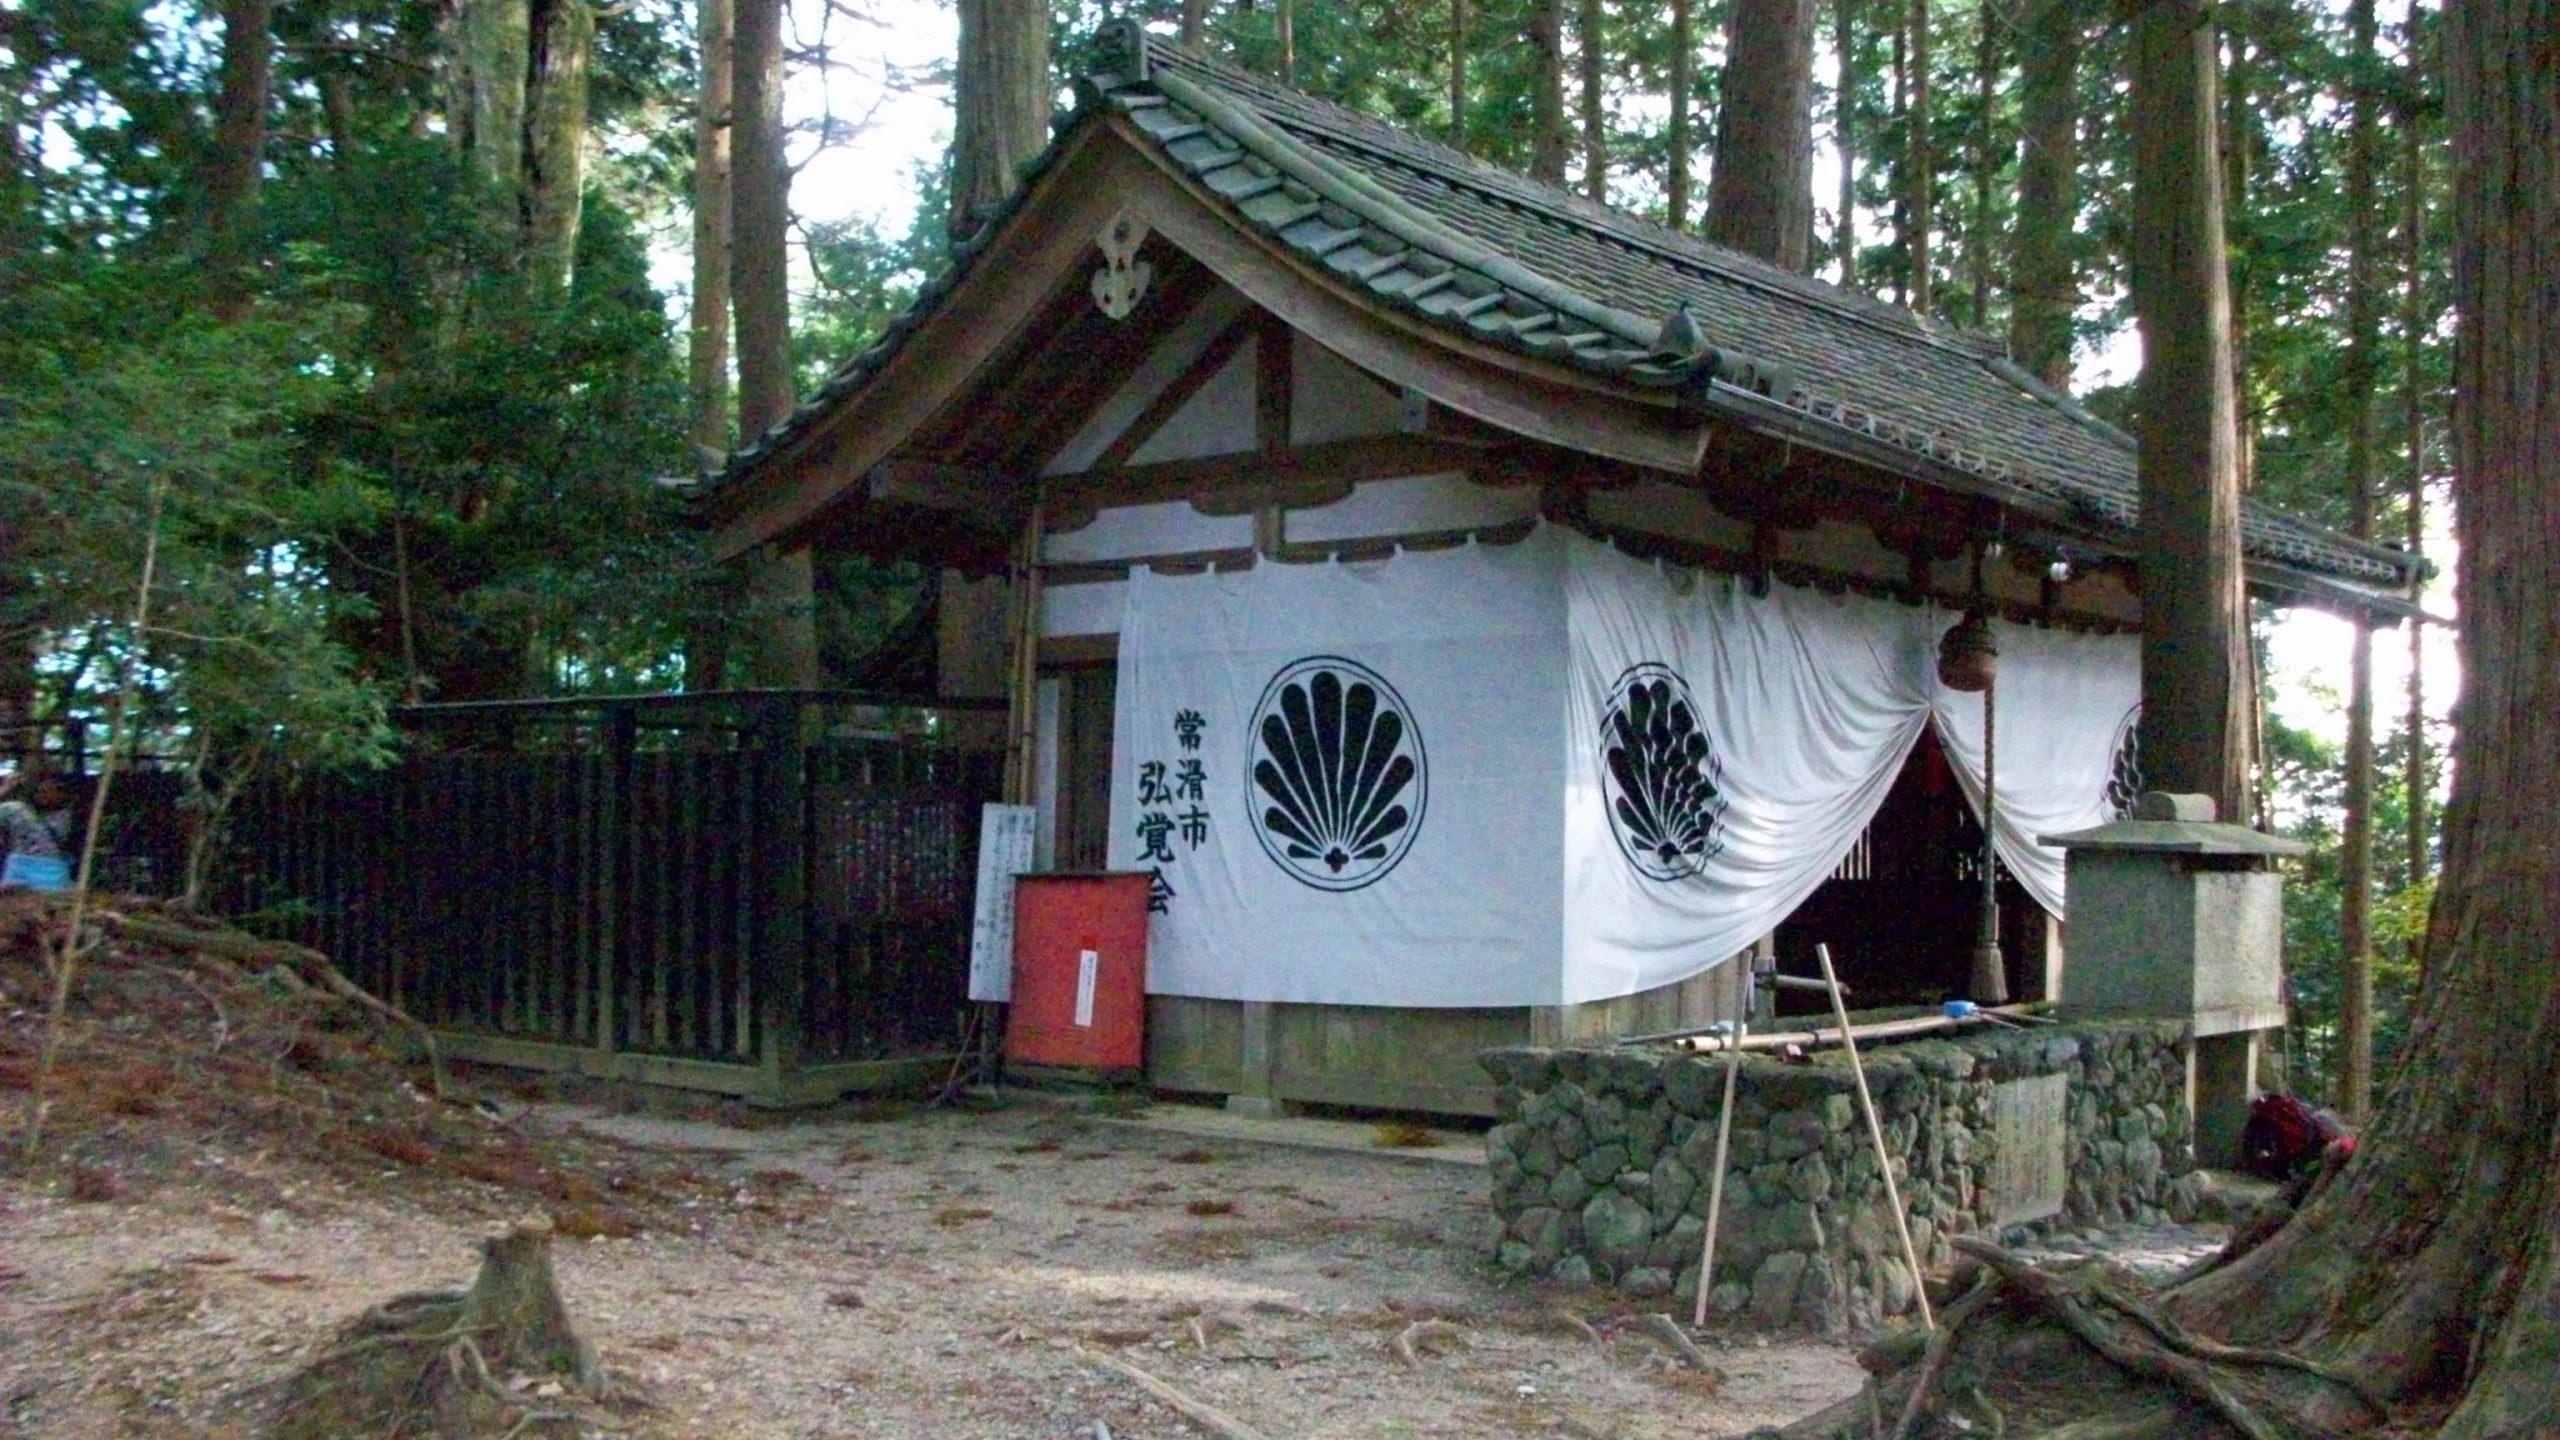 Kuramayama monniken meditatieplek. De plek waar Mikao Usui waarschijnlijk zijn inzichten kreeg.